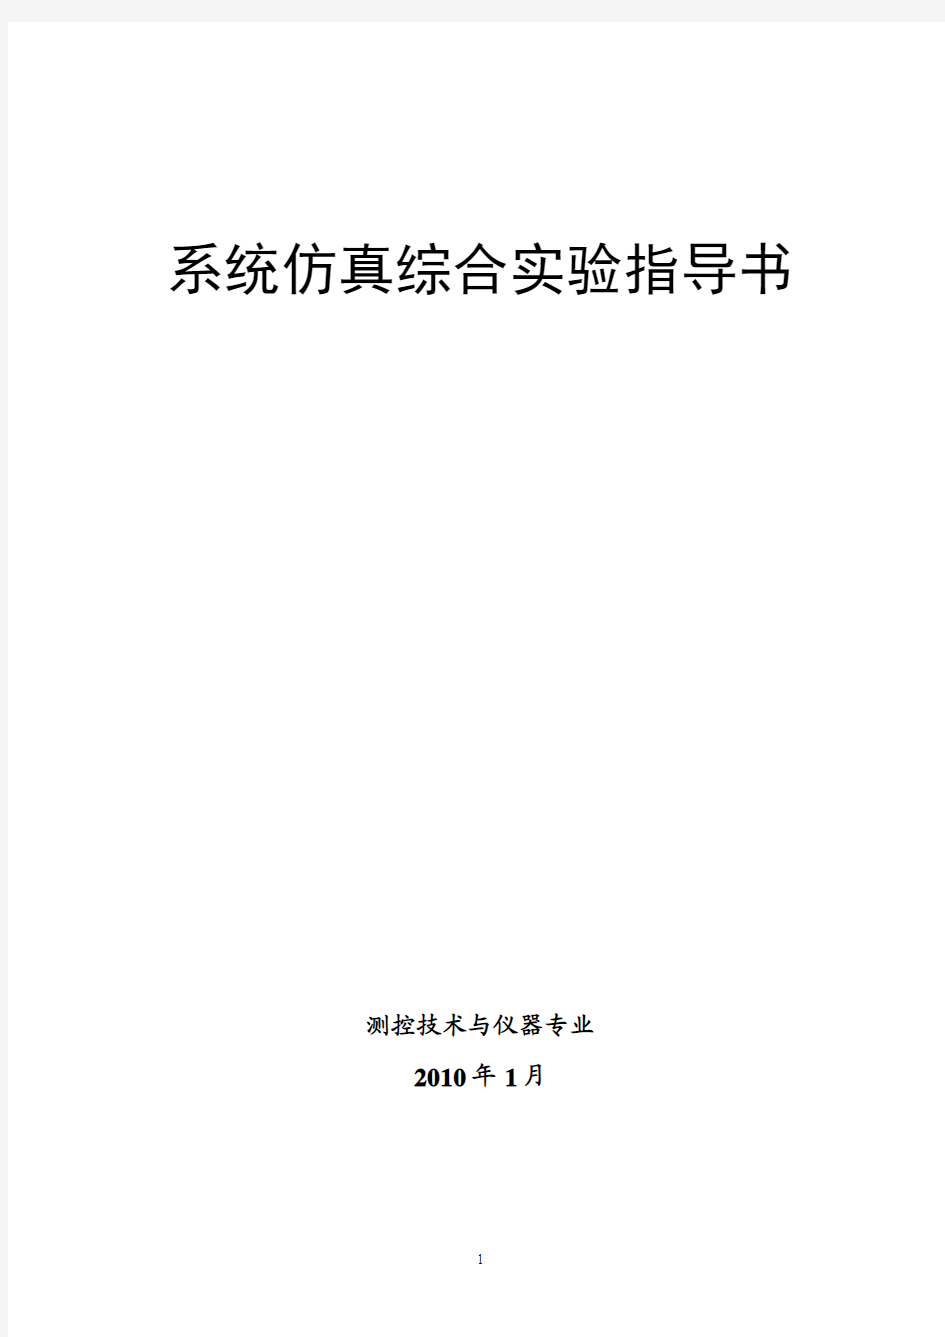 系统仿真综合实验指导书(cekong2010)